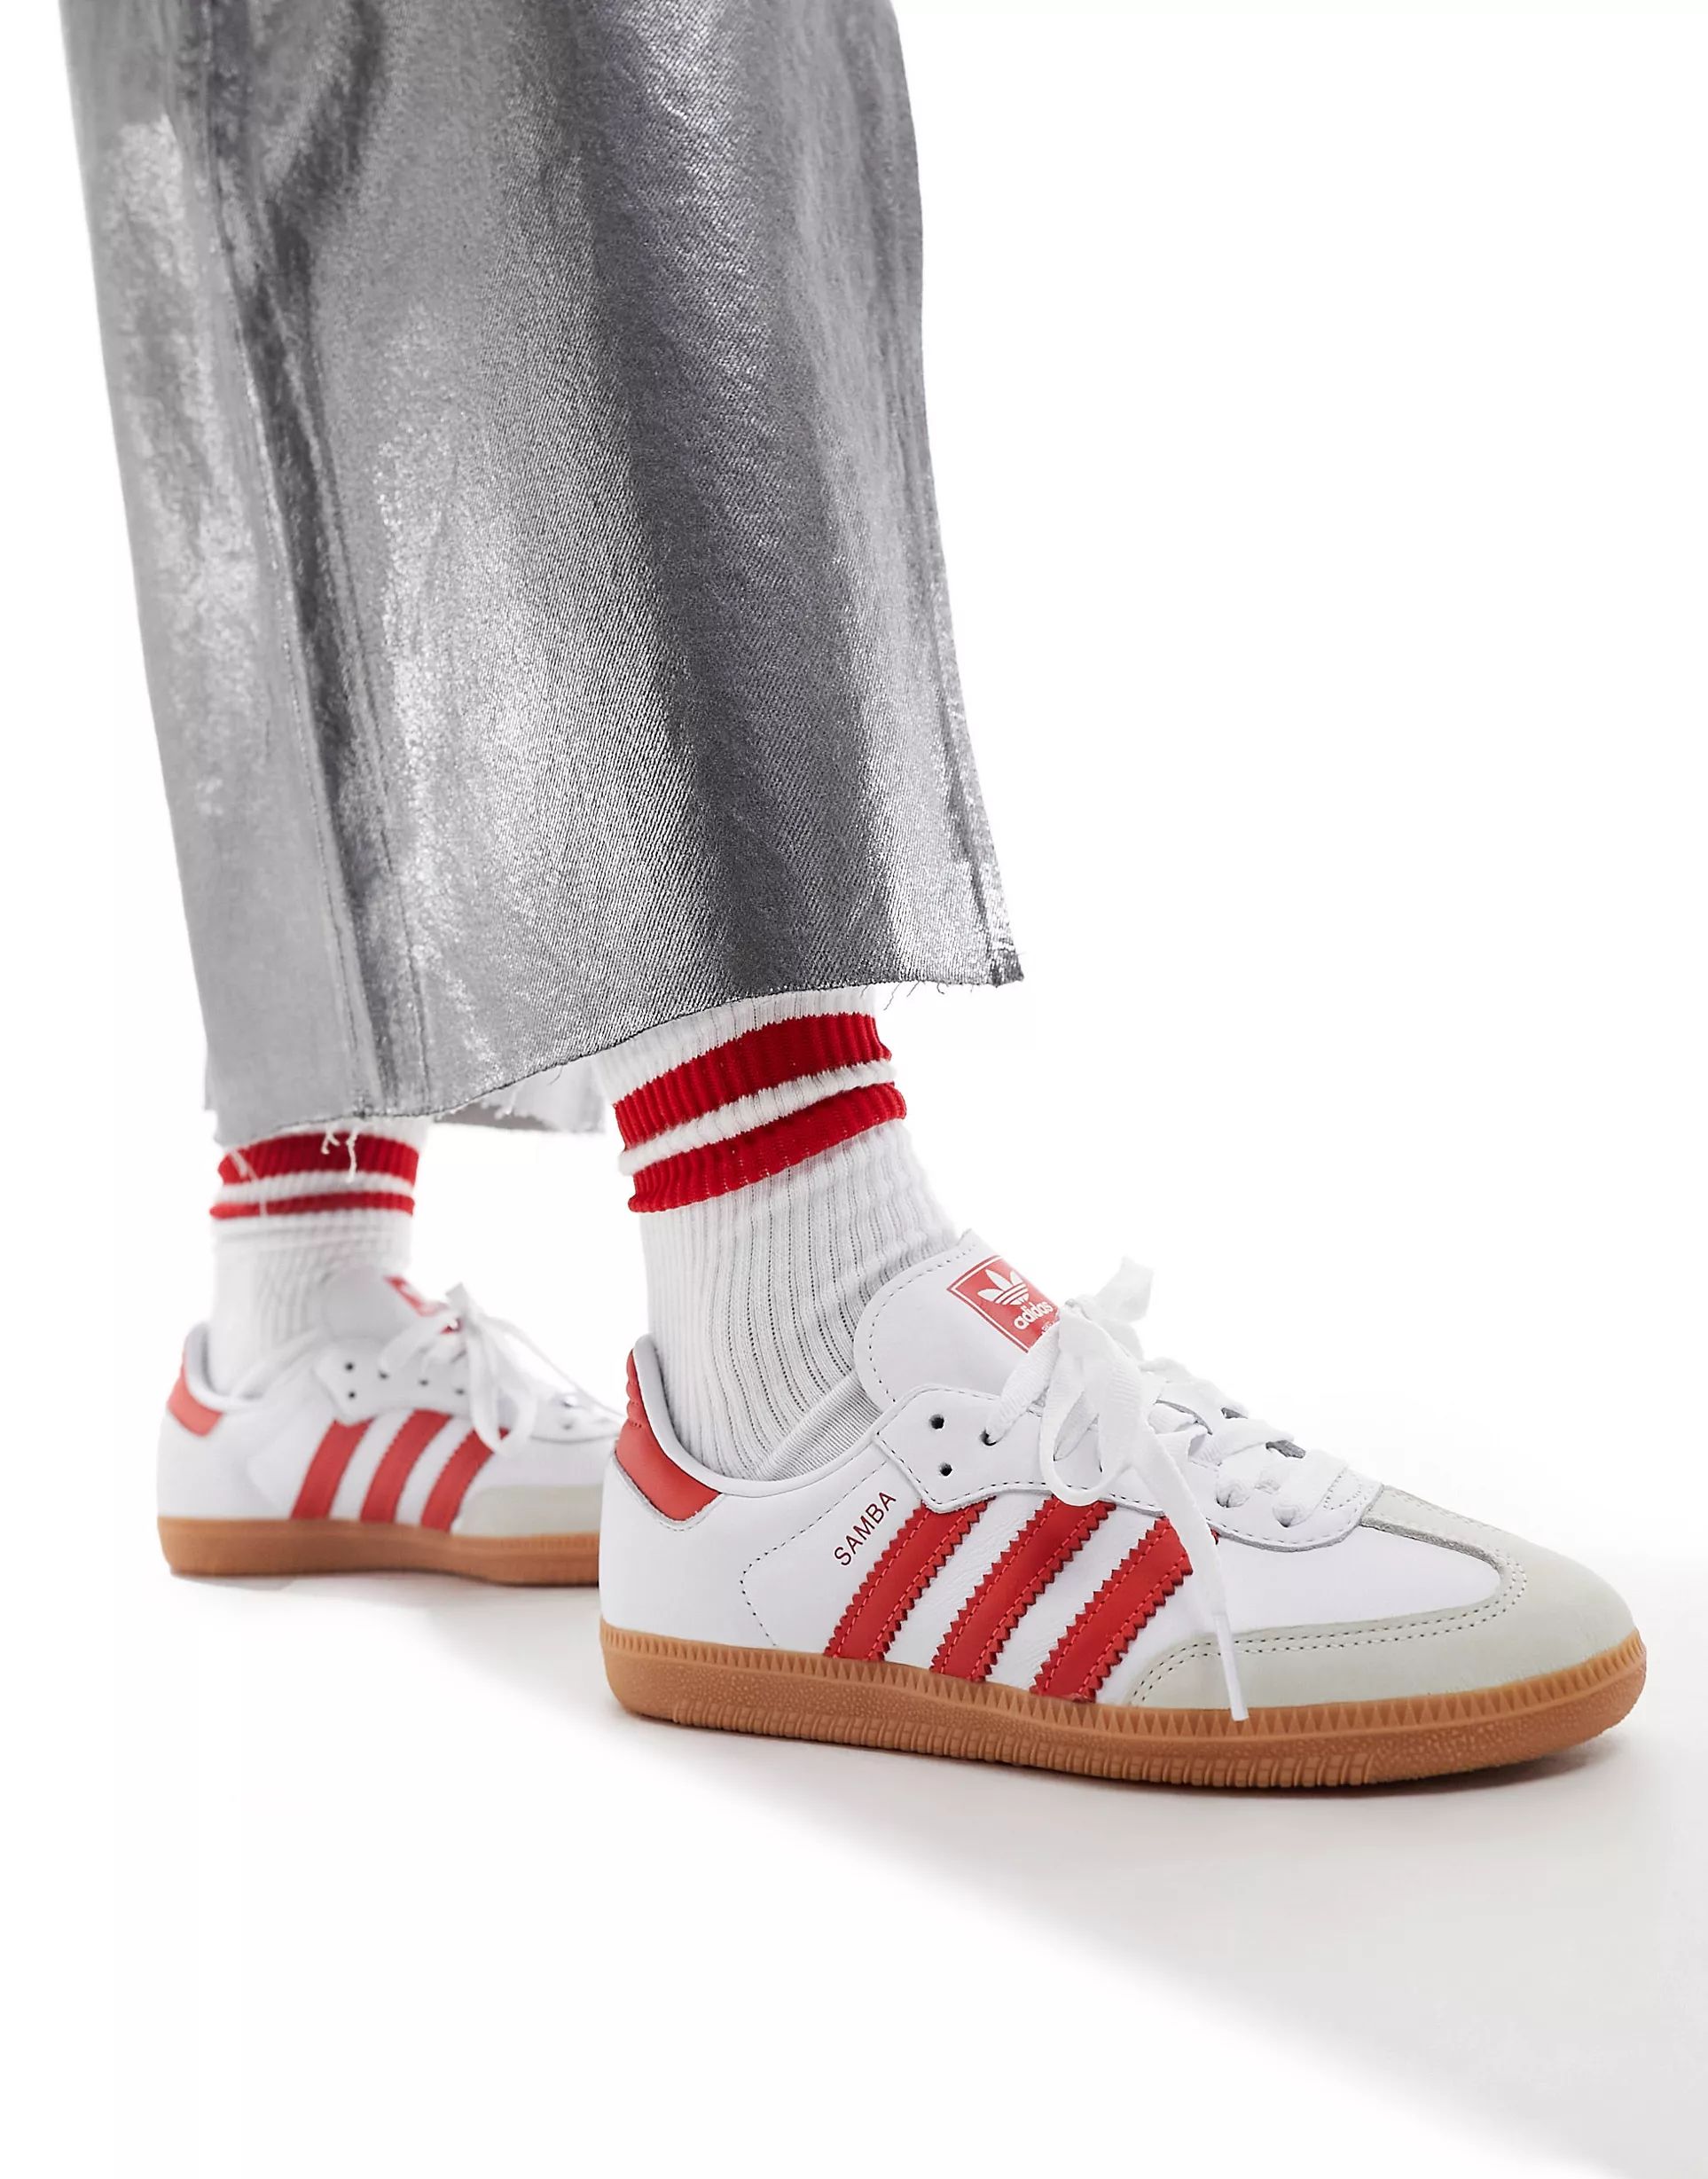 adidas Originals – Samba OG – Sneaker in Weiß und leuchtendem Rot | ASOS (Global)